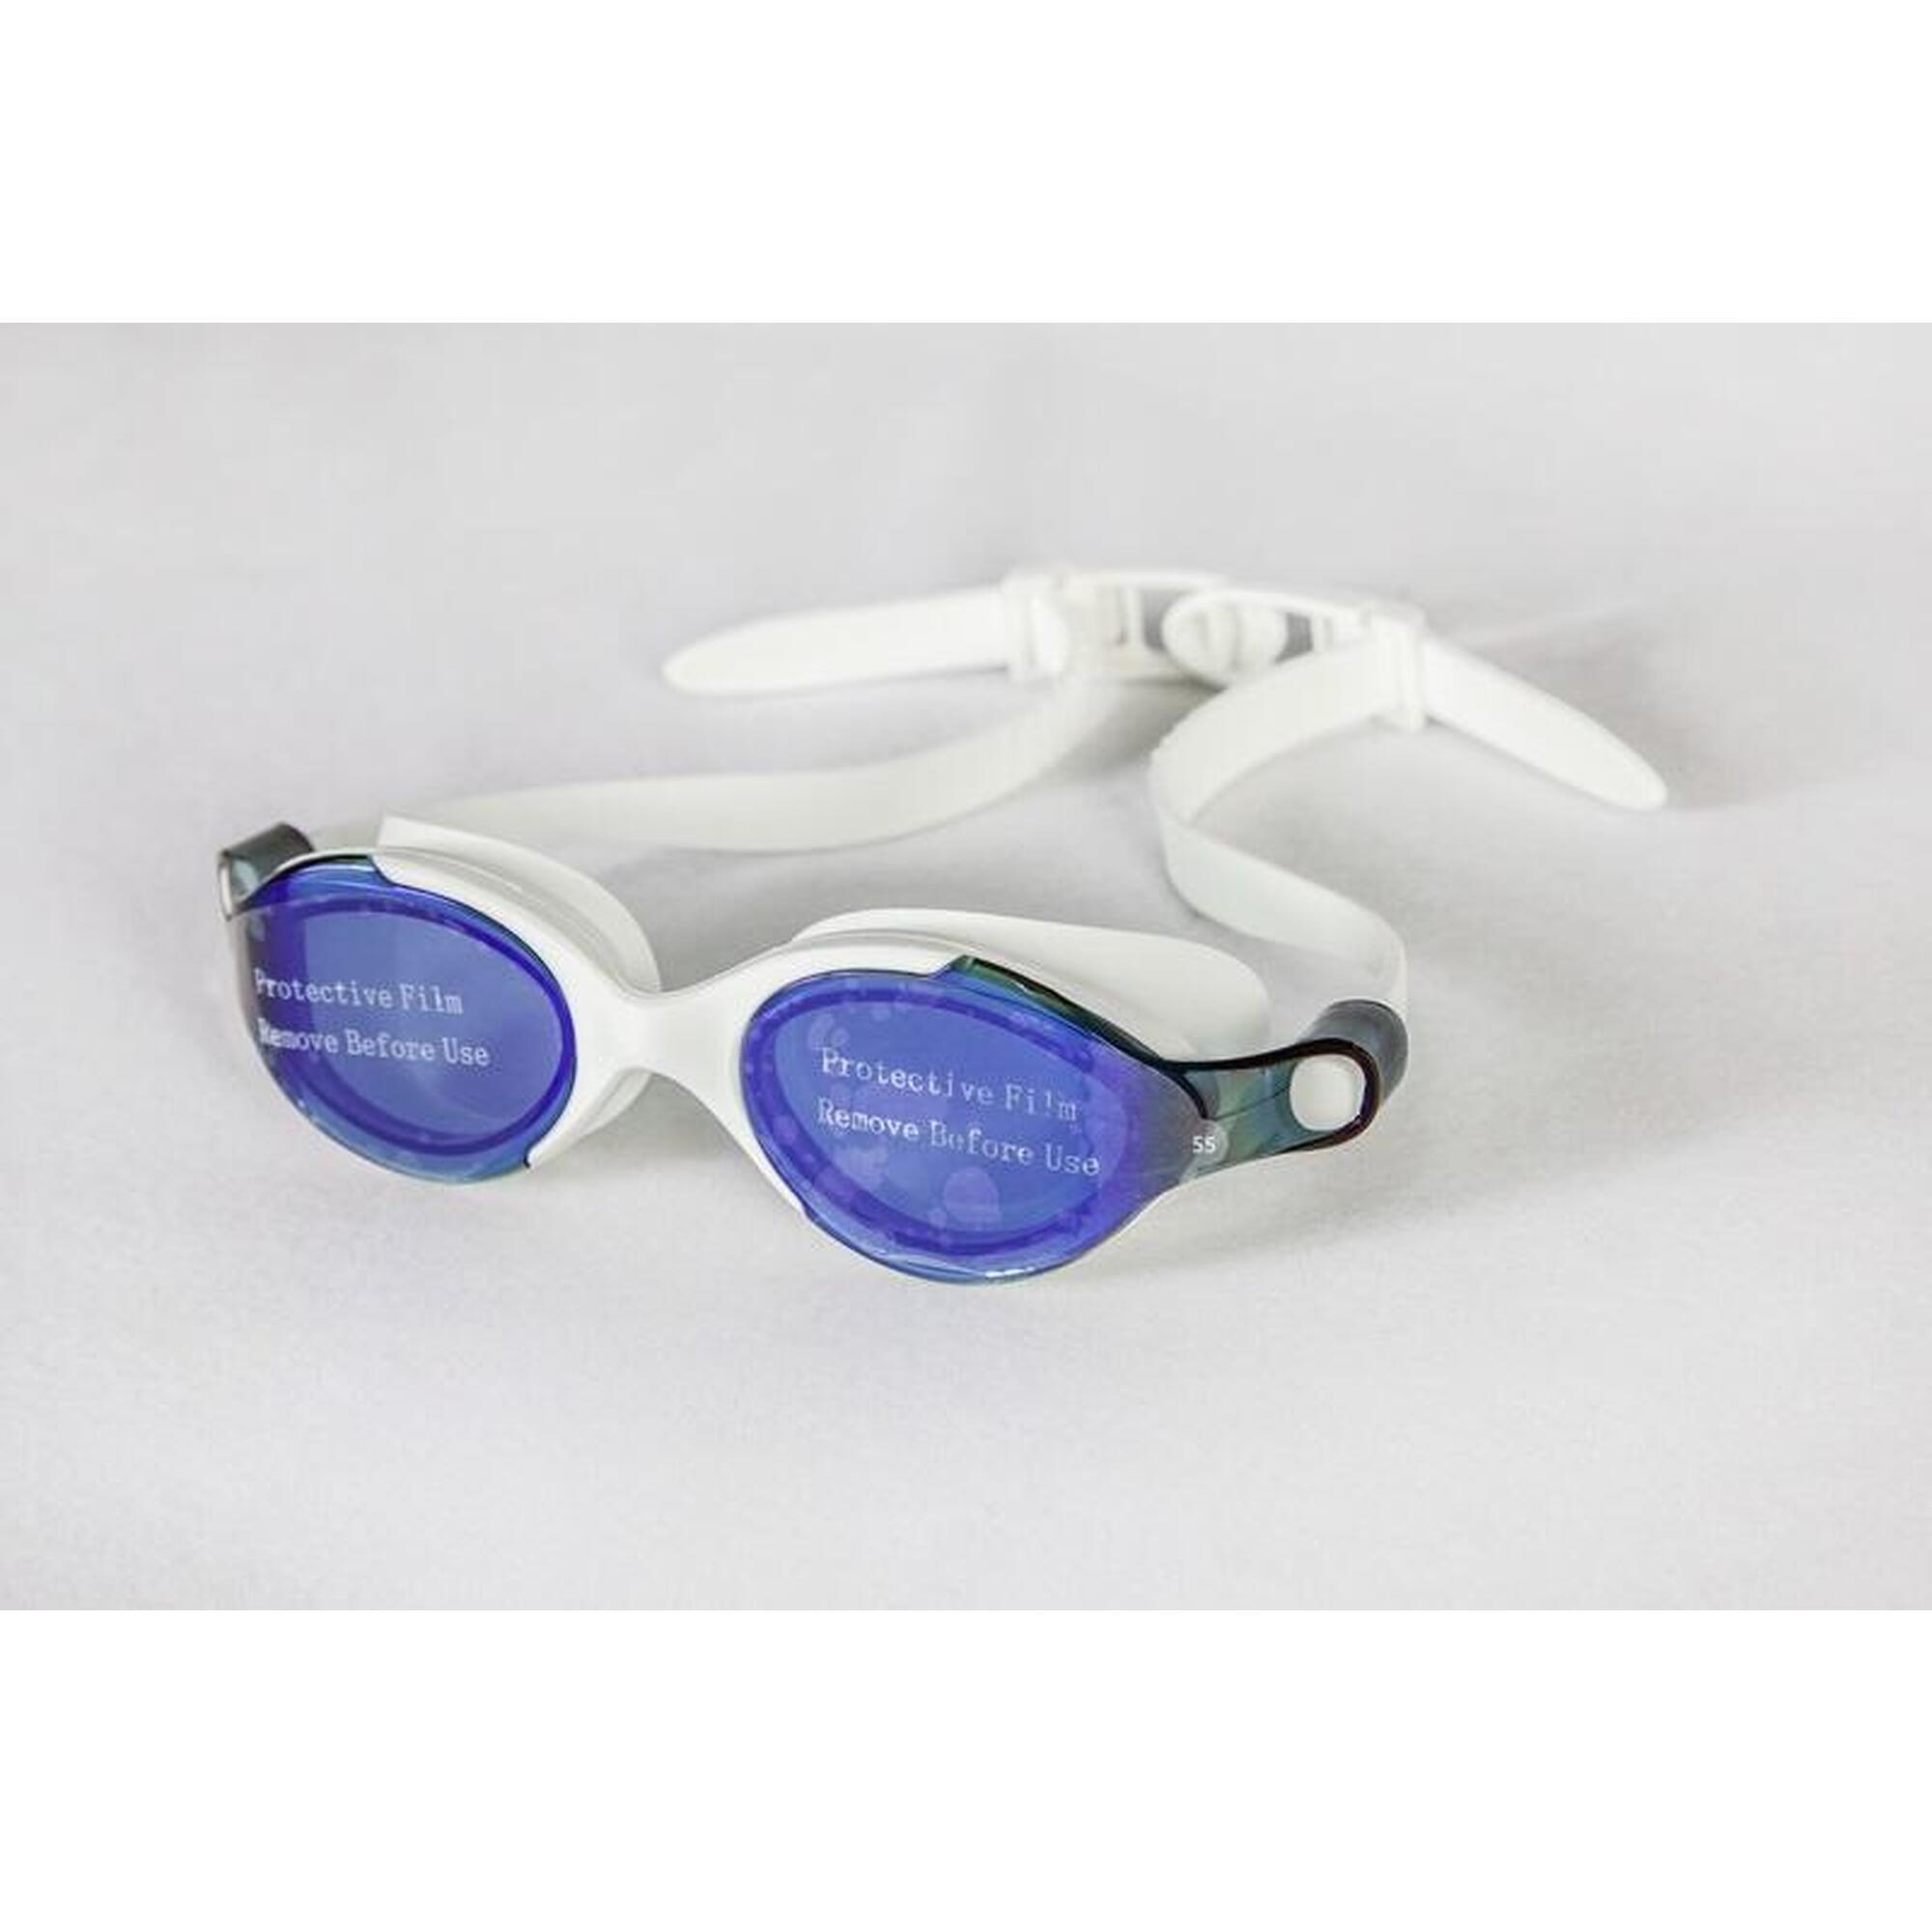 MS-9500MR 成人反光防霧防UV矽膠泳鏡 - 白色/藍色